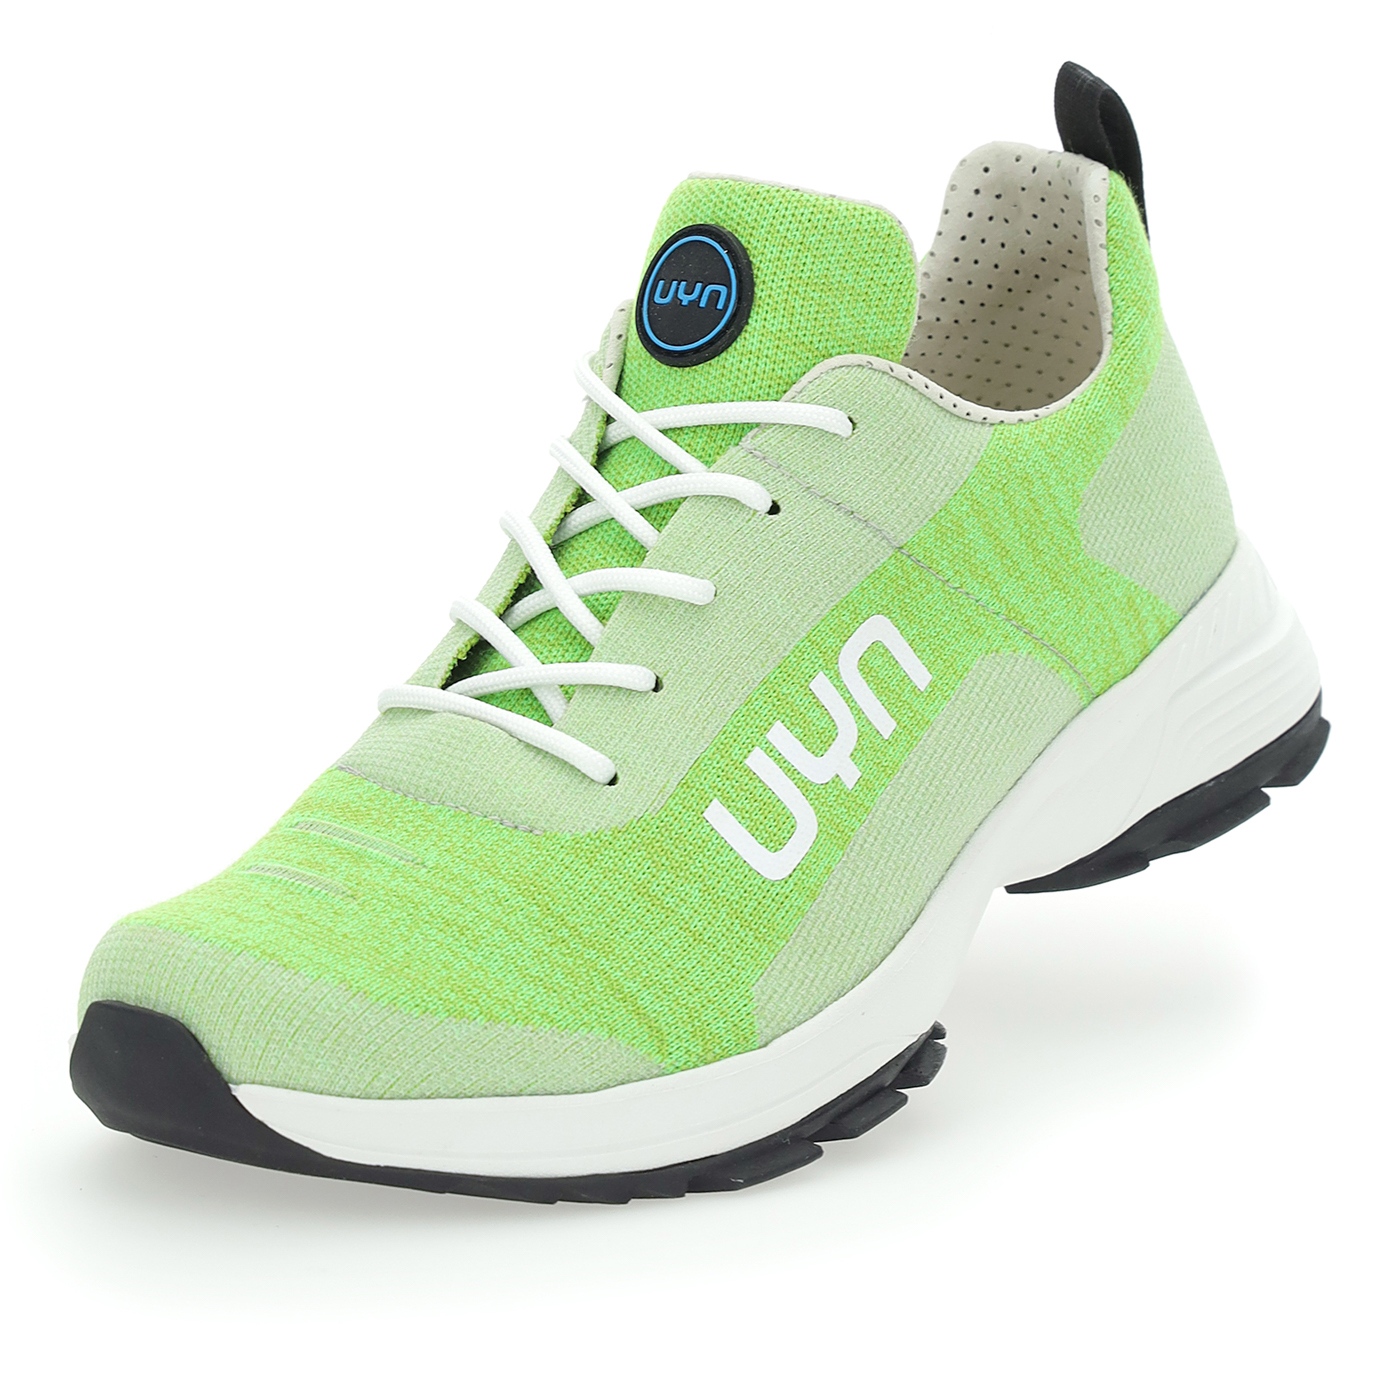 Produktbild von UYN Air Dual XC Schuhe - Grün